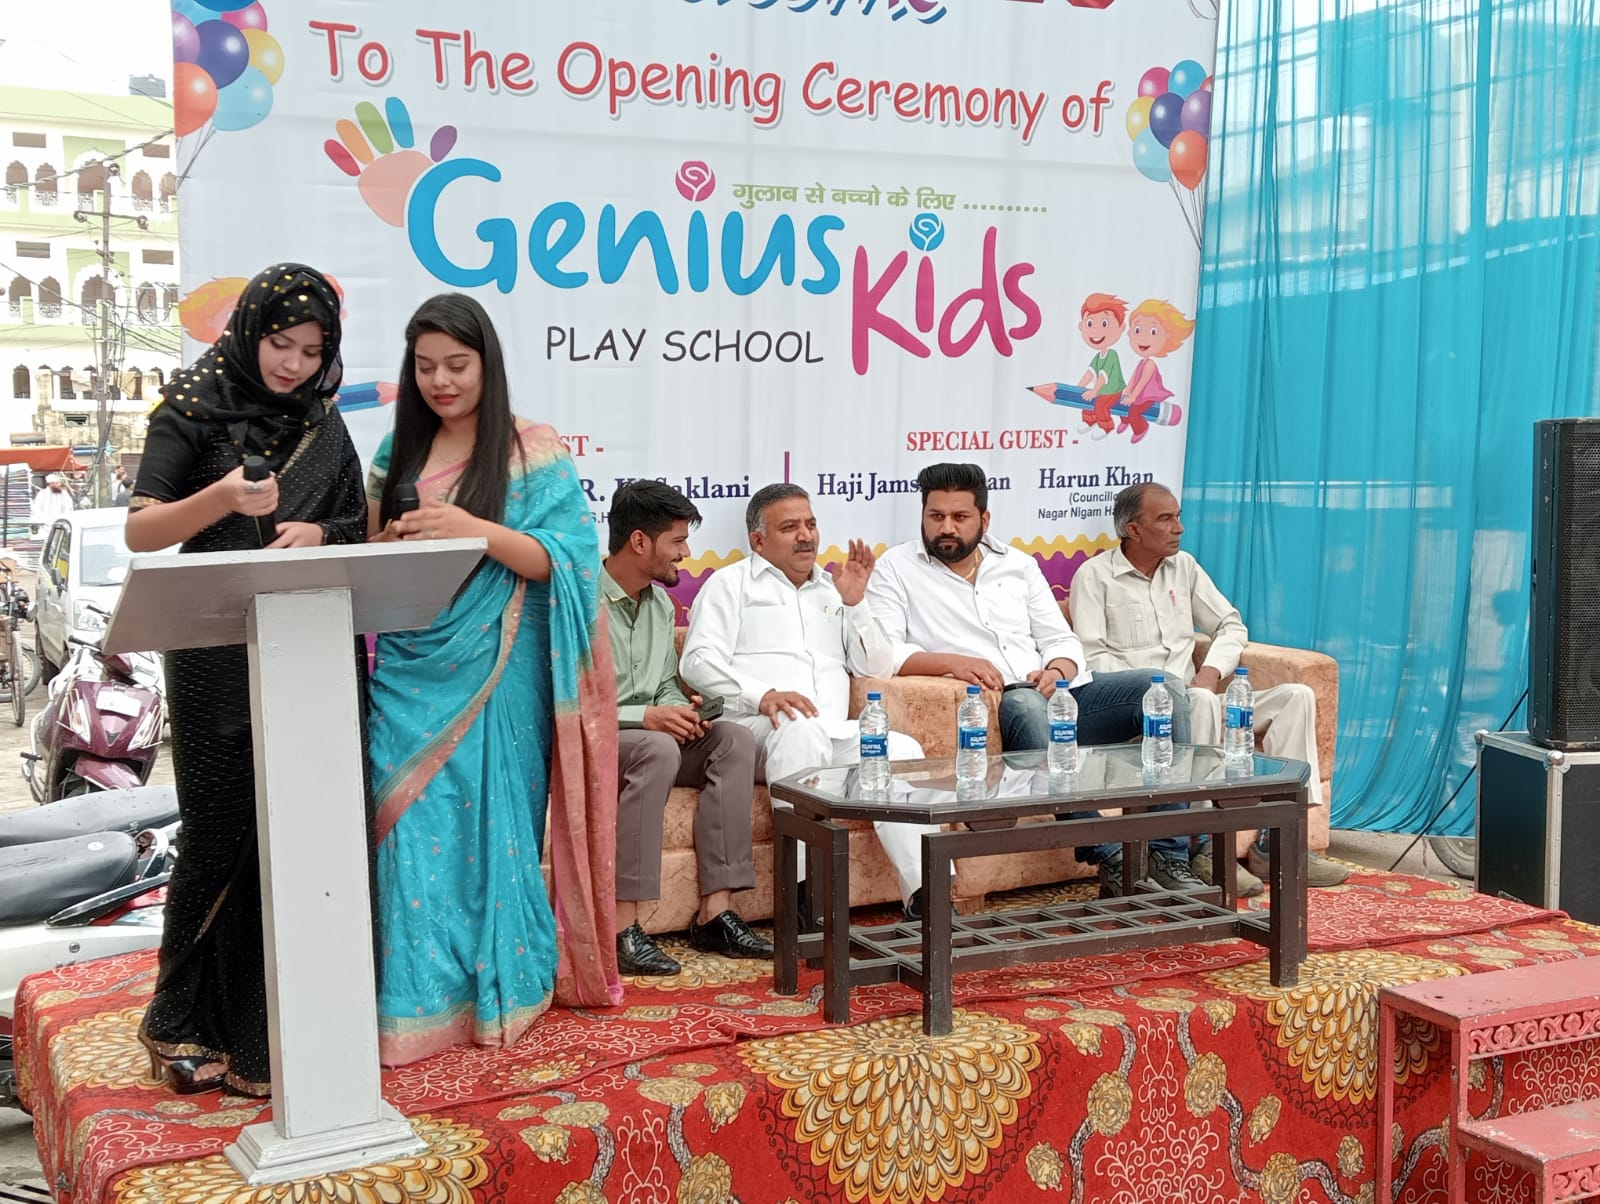 ज्वालापुर में जीनियस किड्स प्ले स्कूल का उद्घाटन